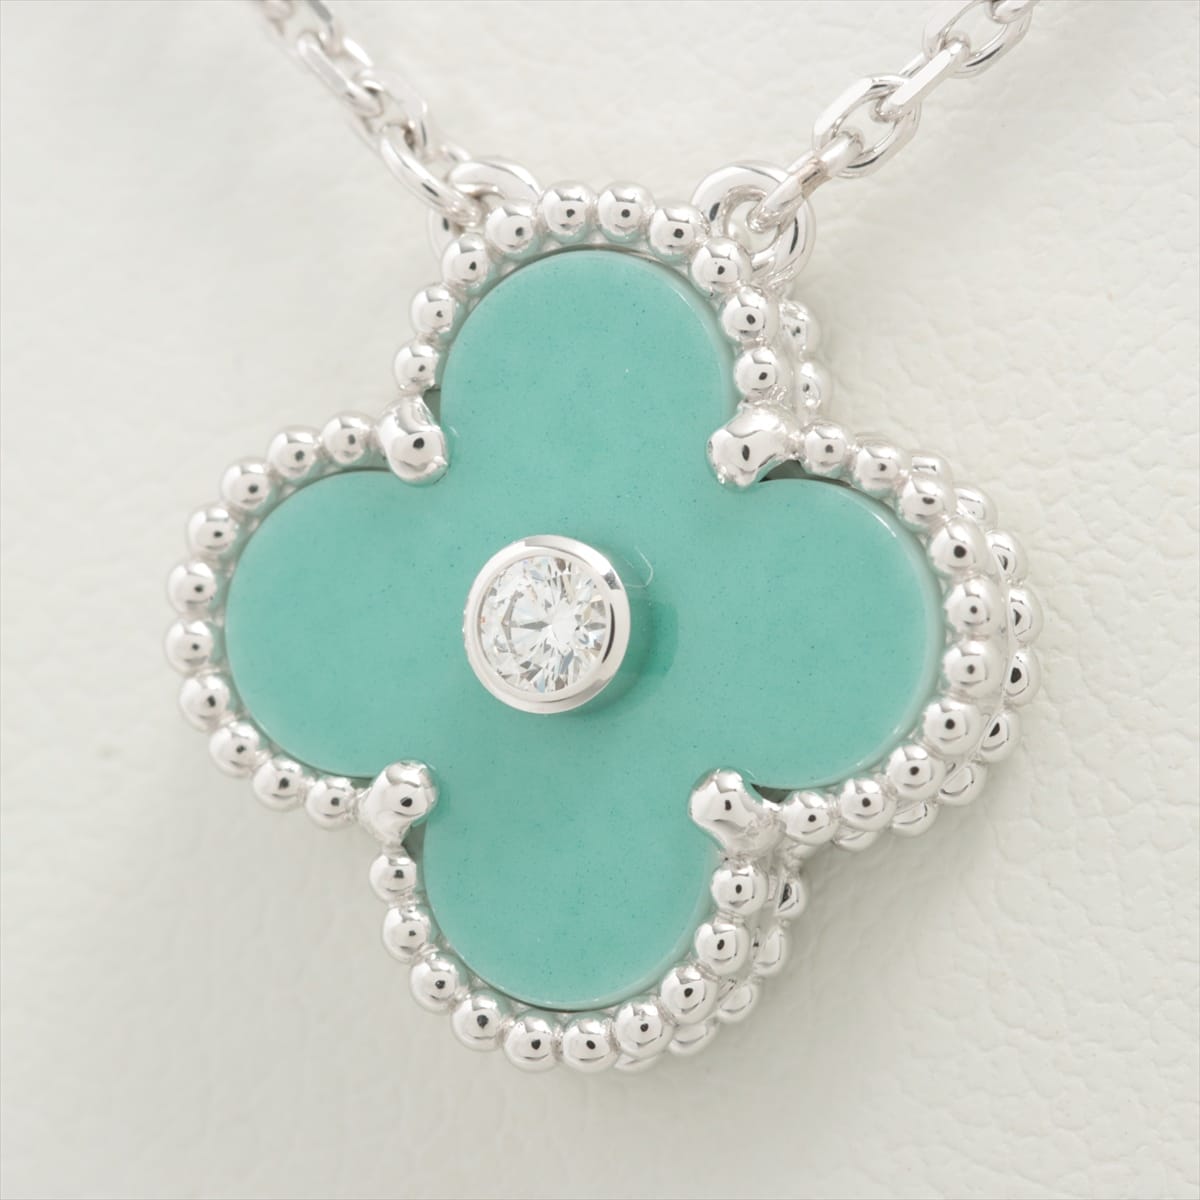 Van Cleef & Arpels Vintage Alhambra Sable diamond Necklace 750(WG) 7.0g